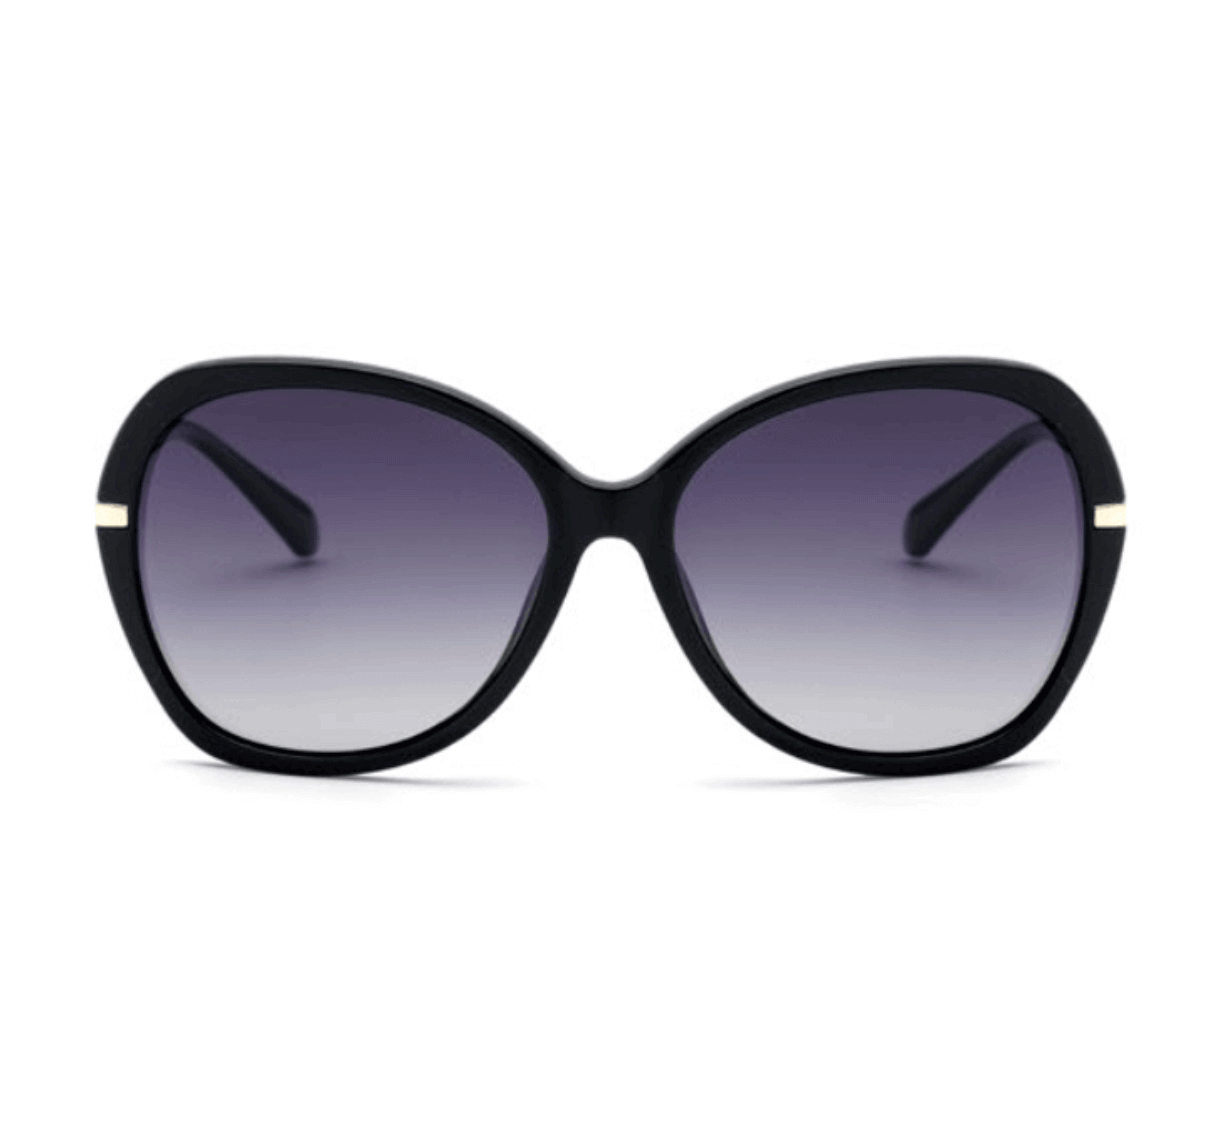 Custom Designer Sunglasses from China - Custom Sunglasses Manufacturer - Custom Eyewear Manufacturers in China